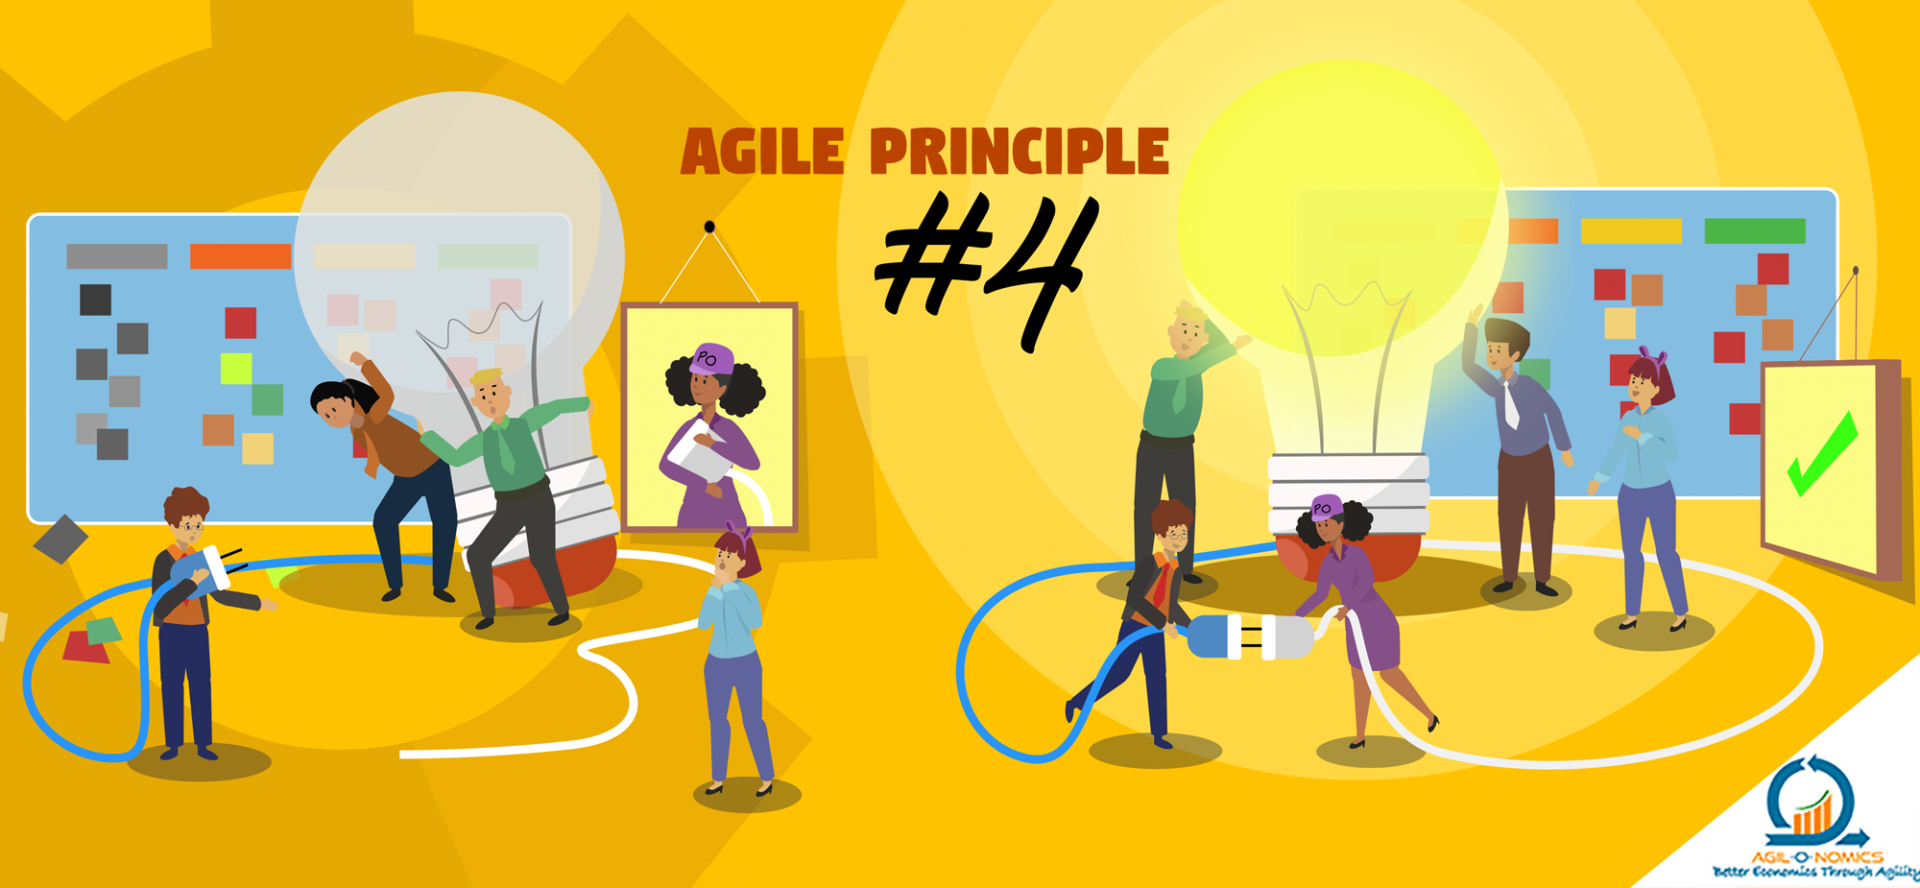 agile principle 4